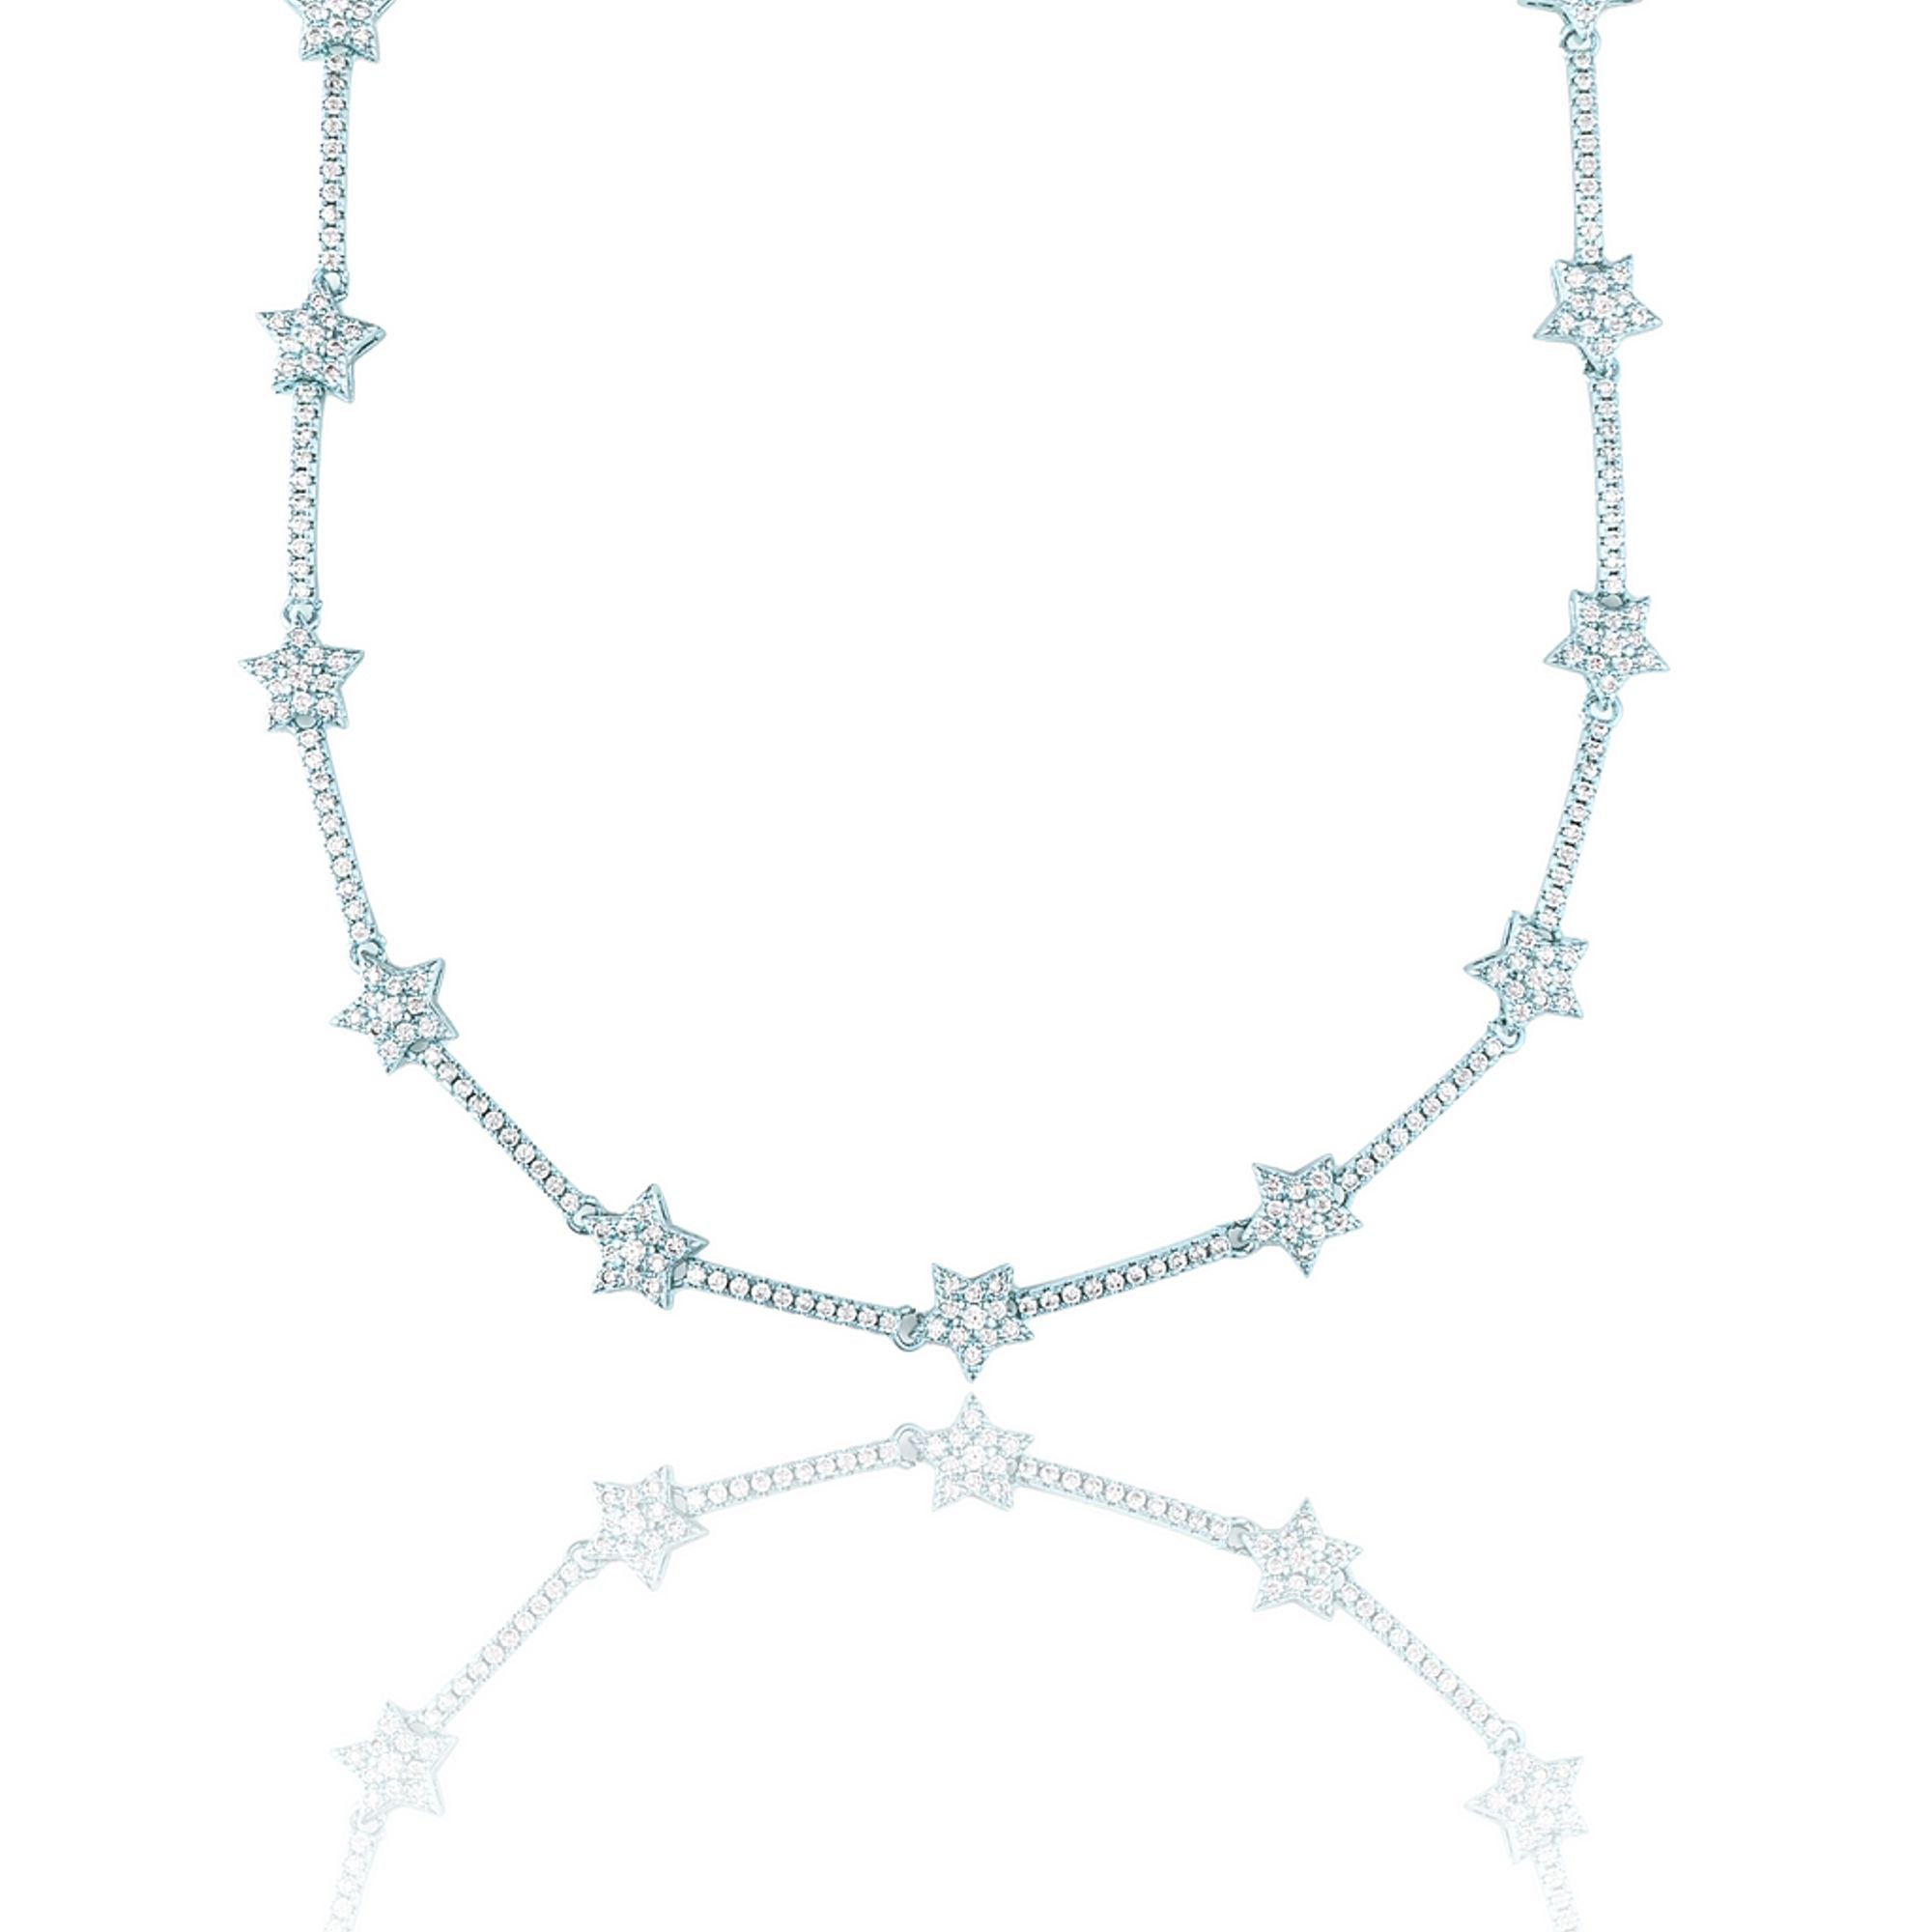 Star Necklace / Bracelet With CZ Cubic Zirconia Stones (G157)